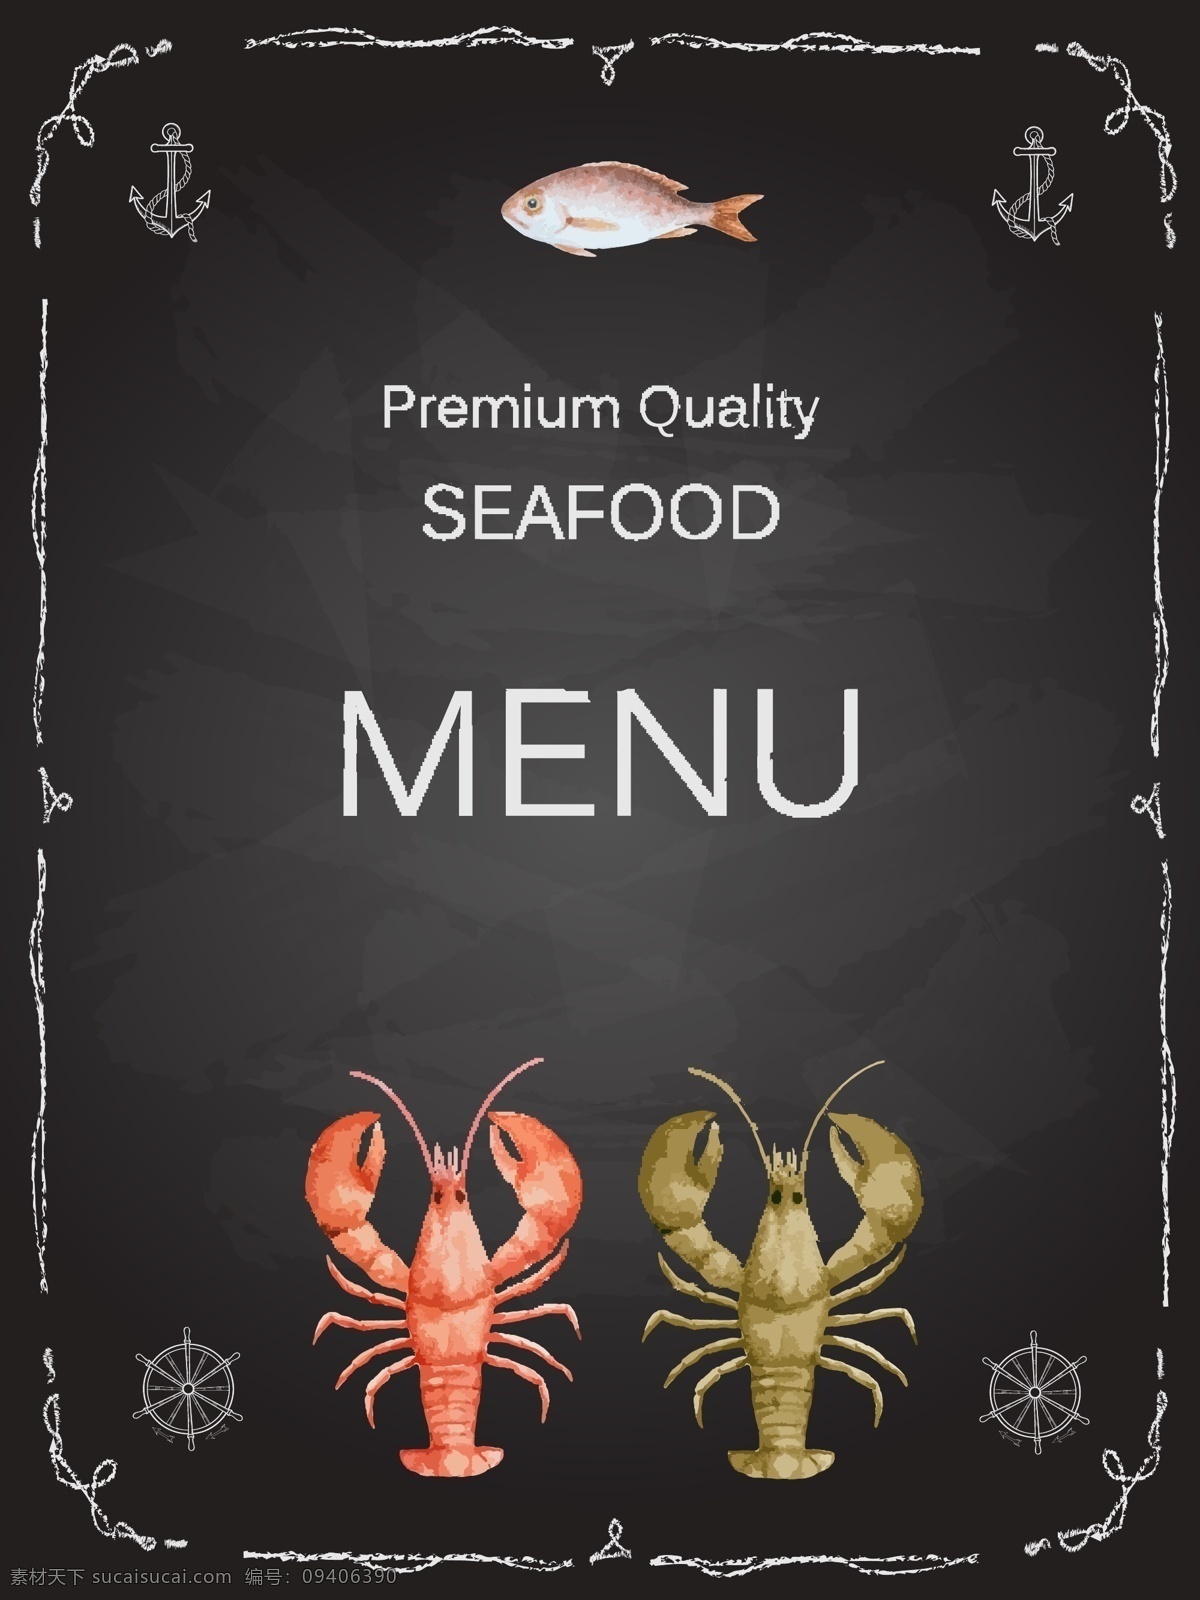 创意 海鲜 食品 菜单 矢量图 花纹 船锚 缆绳 鱼 海鲜食品 餐厅 龙虾 船舵 黑色